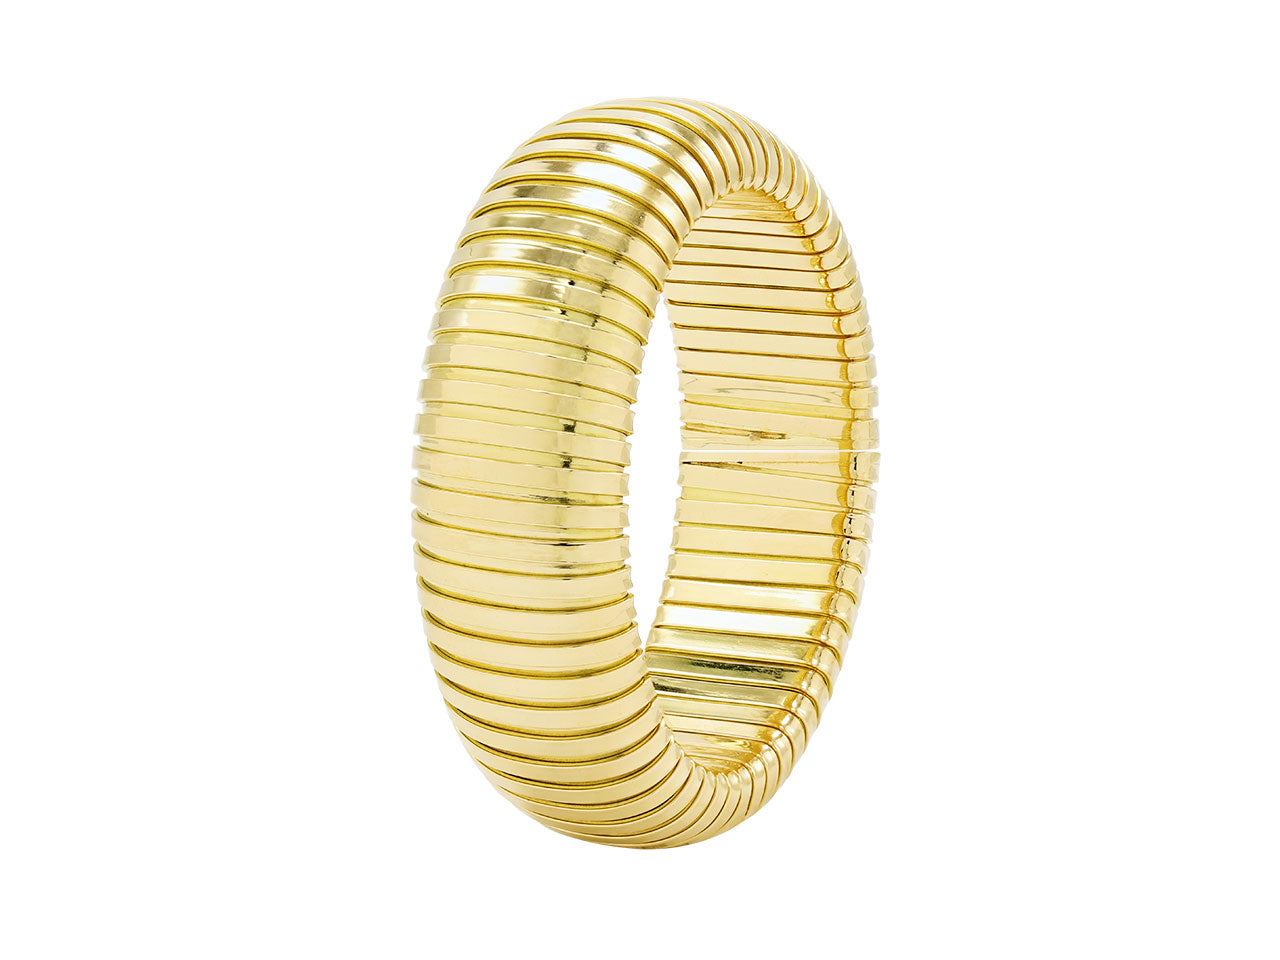 Domed Cuff Bracelet in 18K Gold, by Beladora